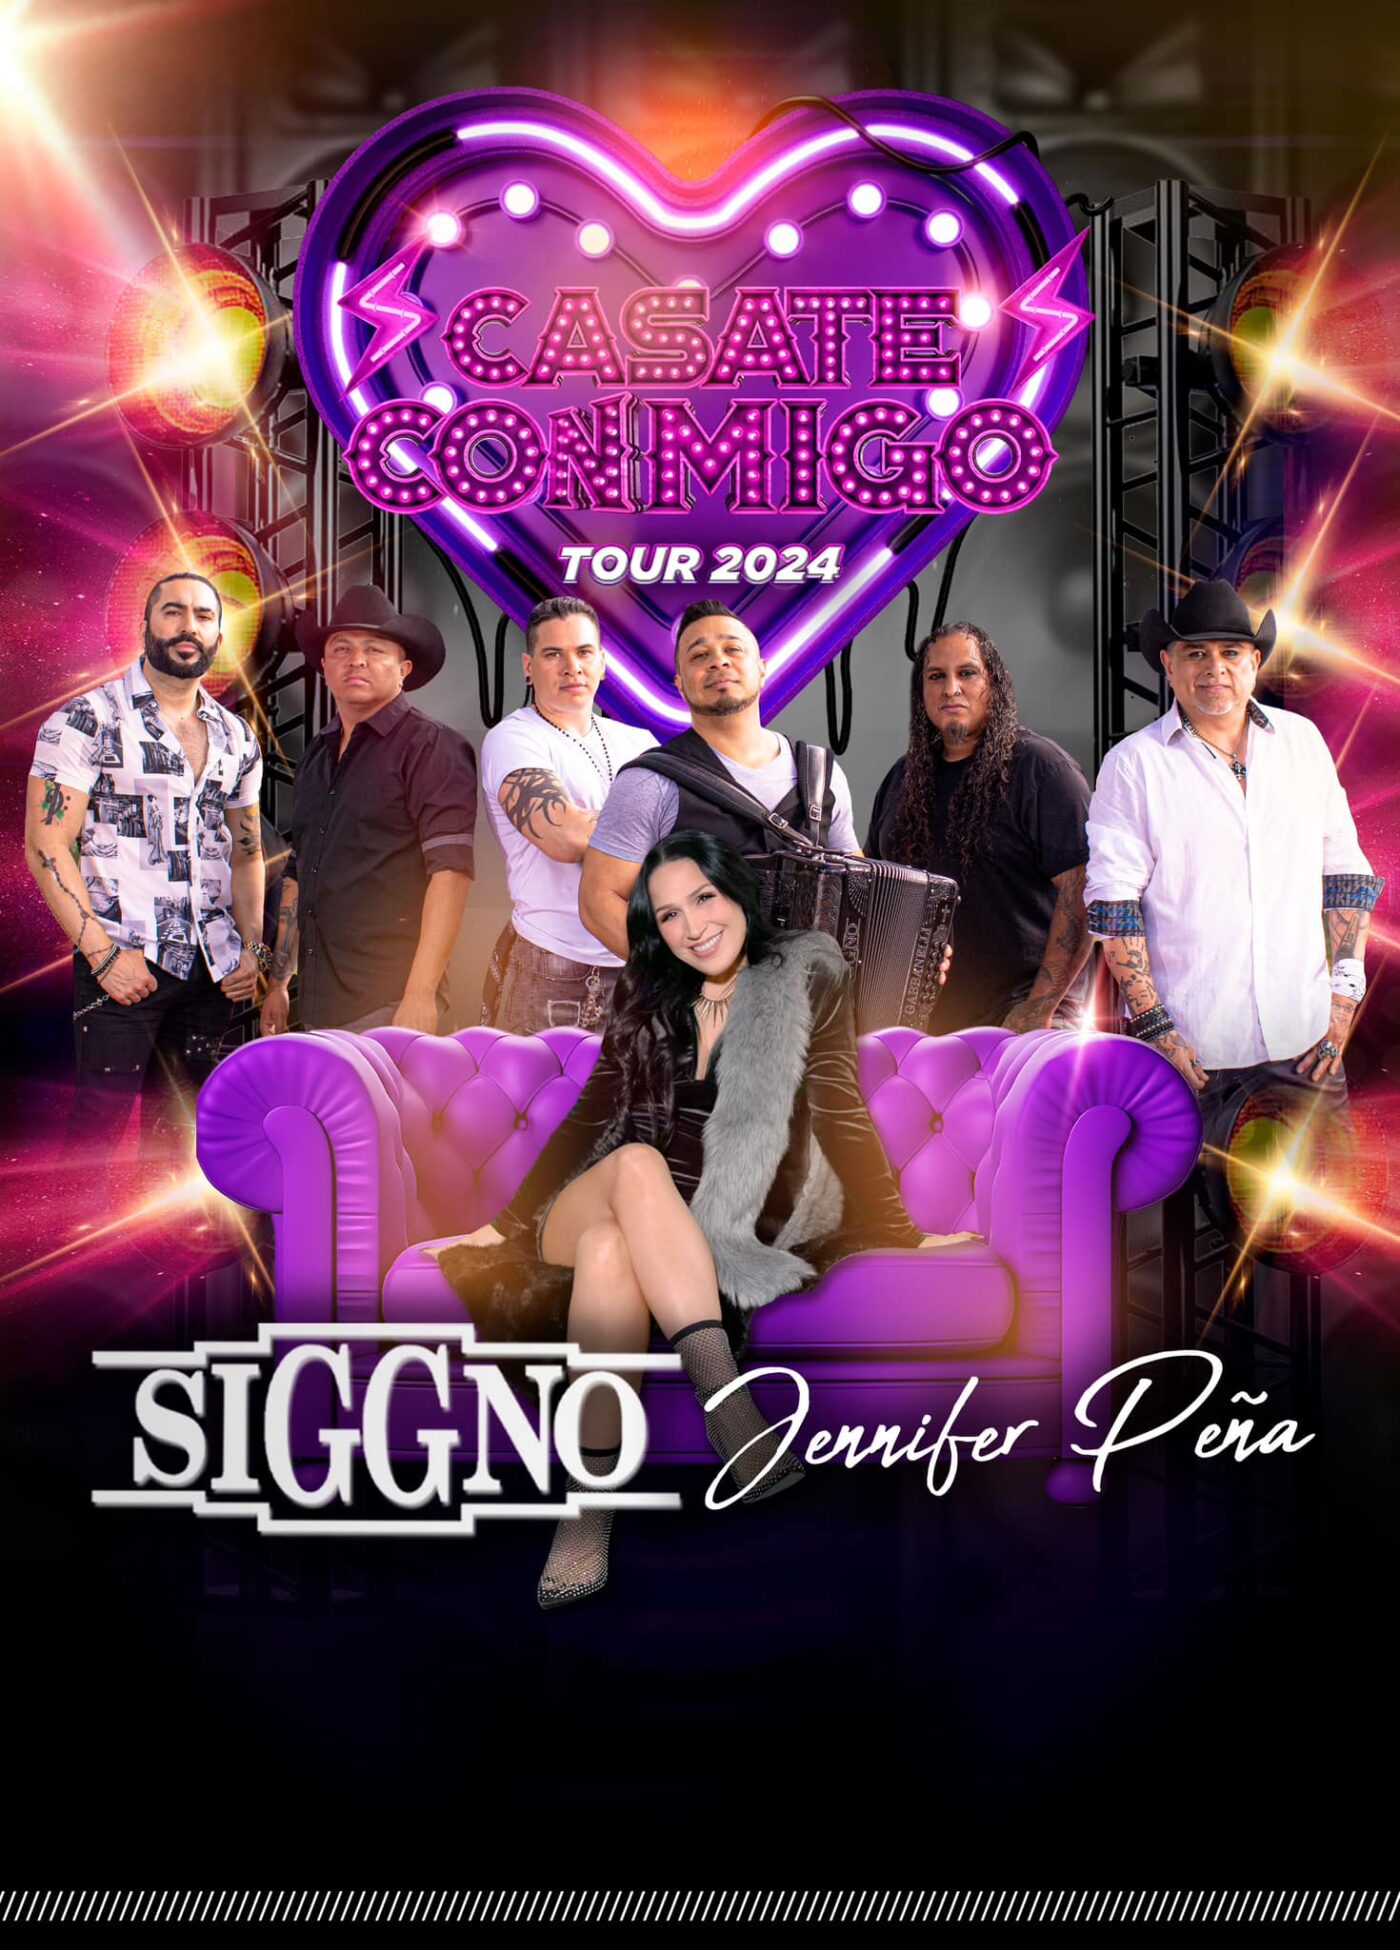 Jennifer Peña and Grupo Siggno announce their Casate Conmigo Tour 2024